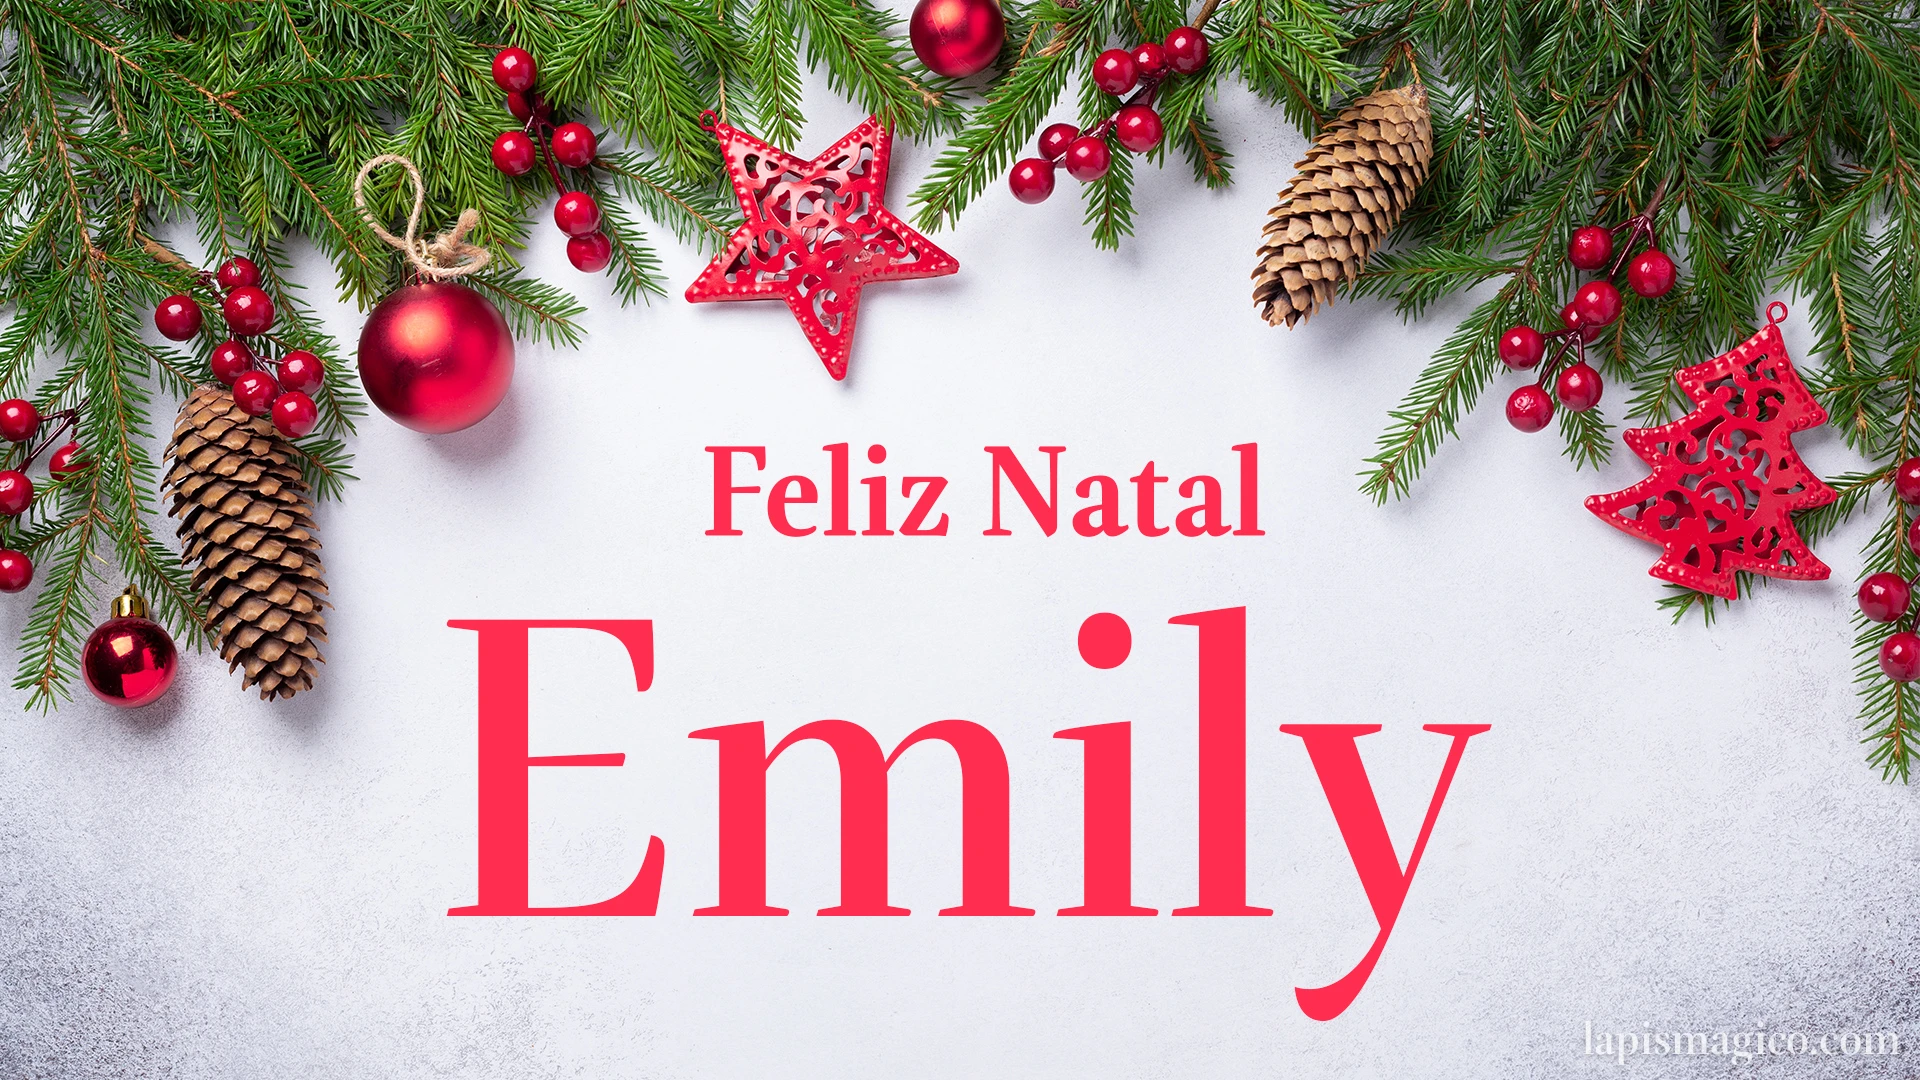 Oh Emily, cinco postais de Feliz Natal Postal com o teu nome